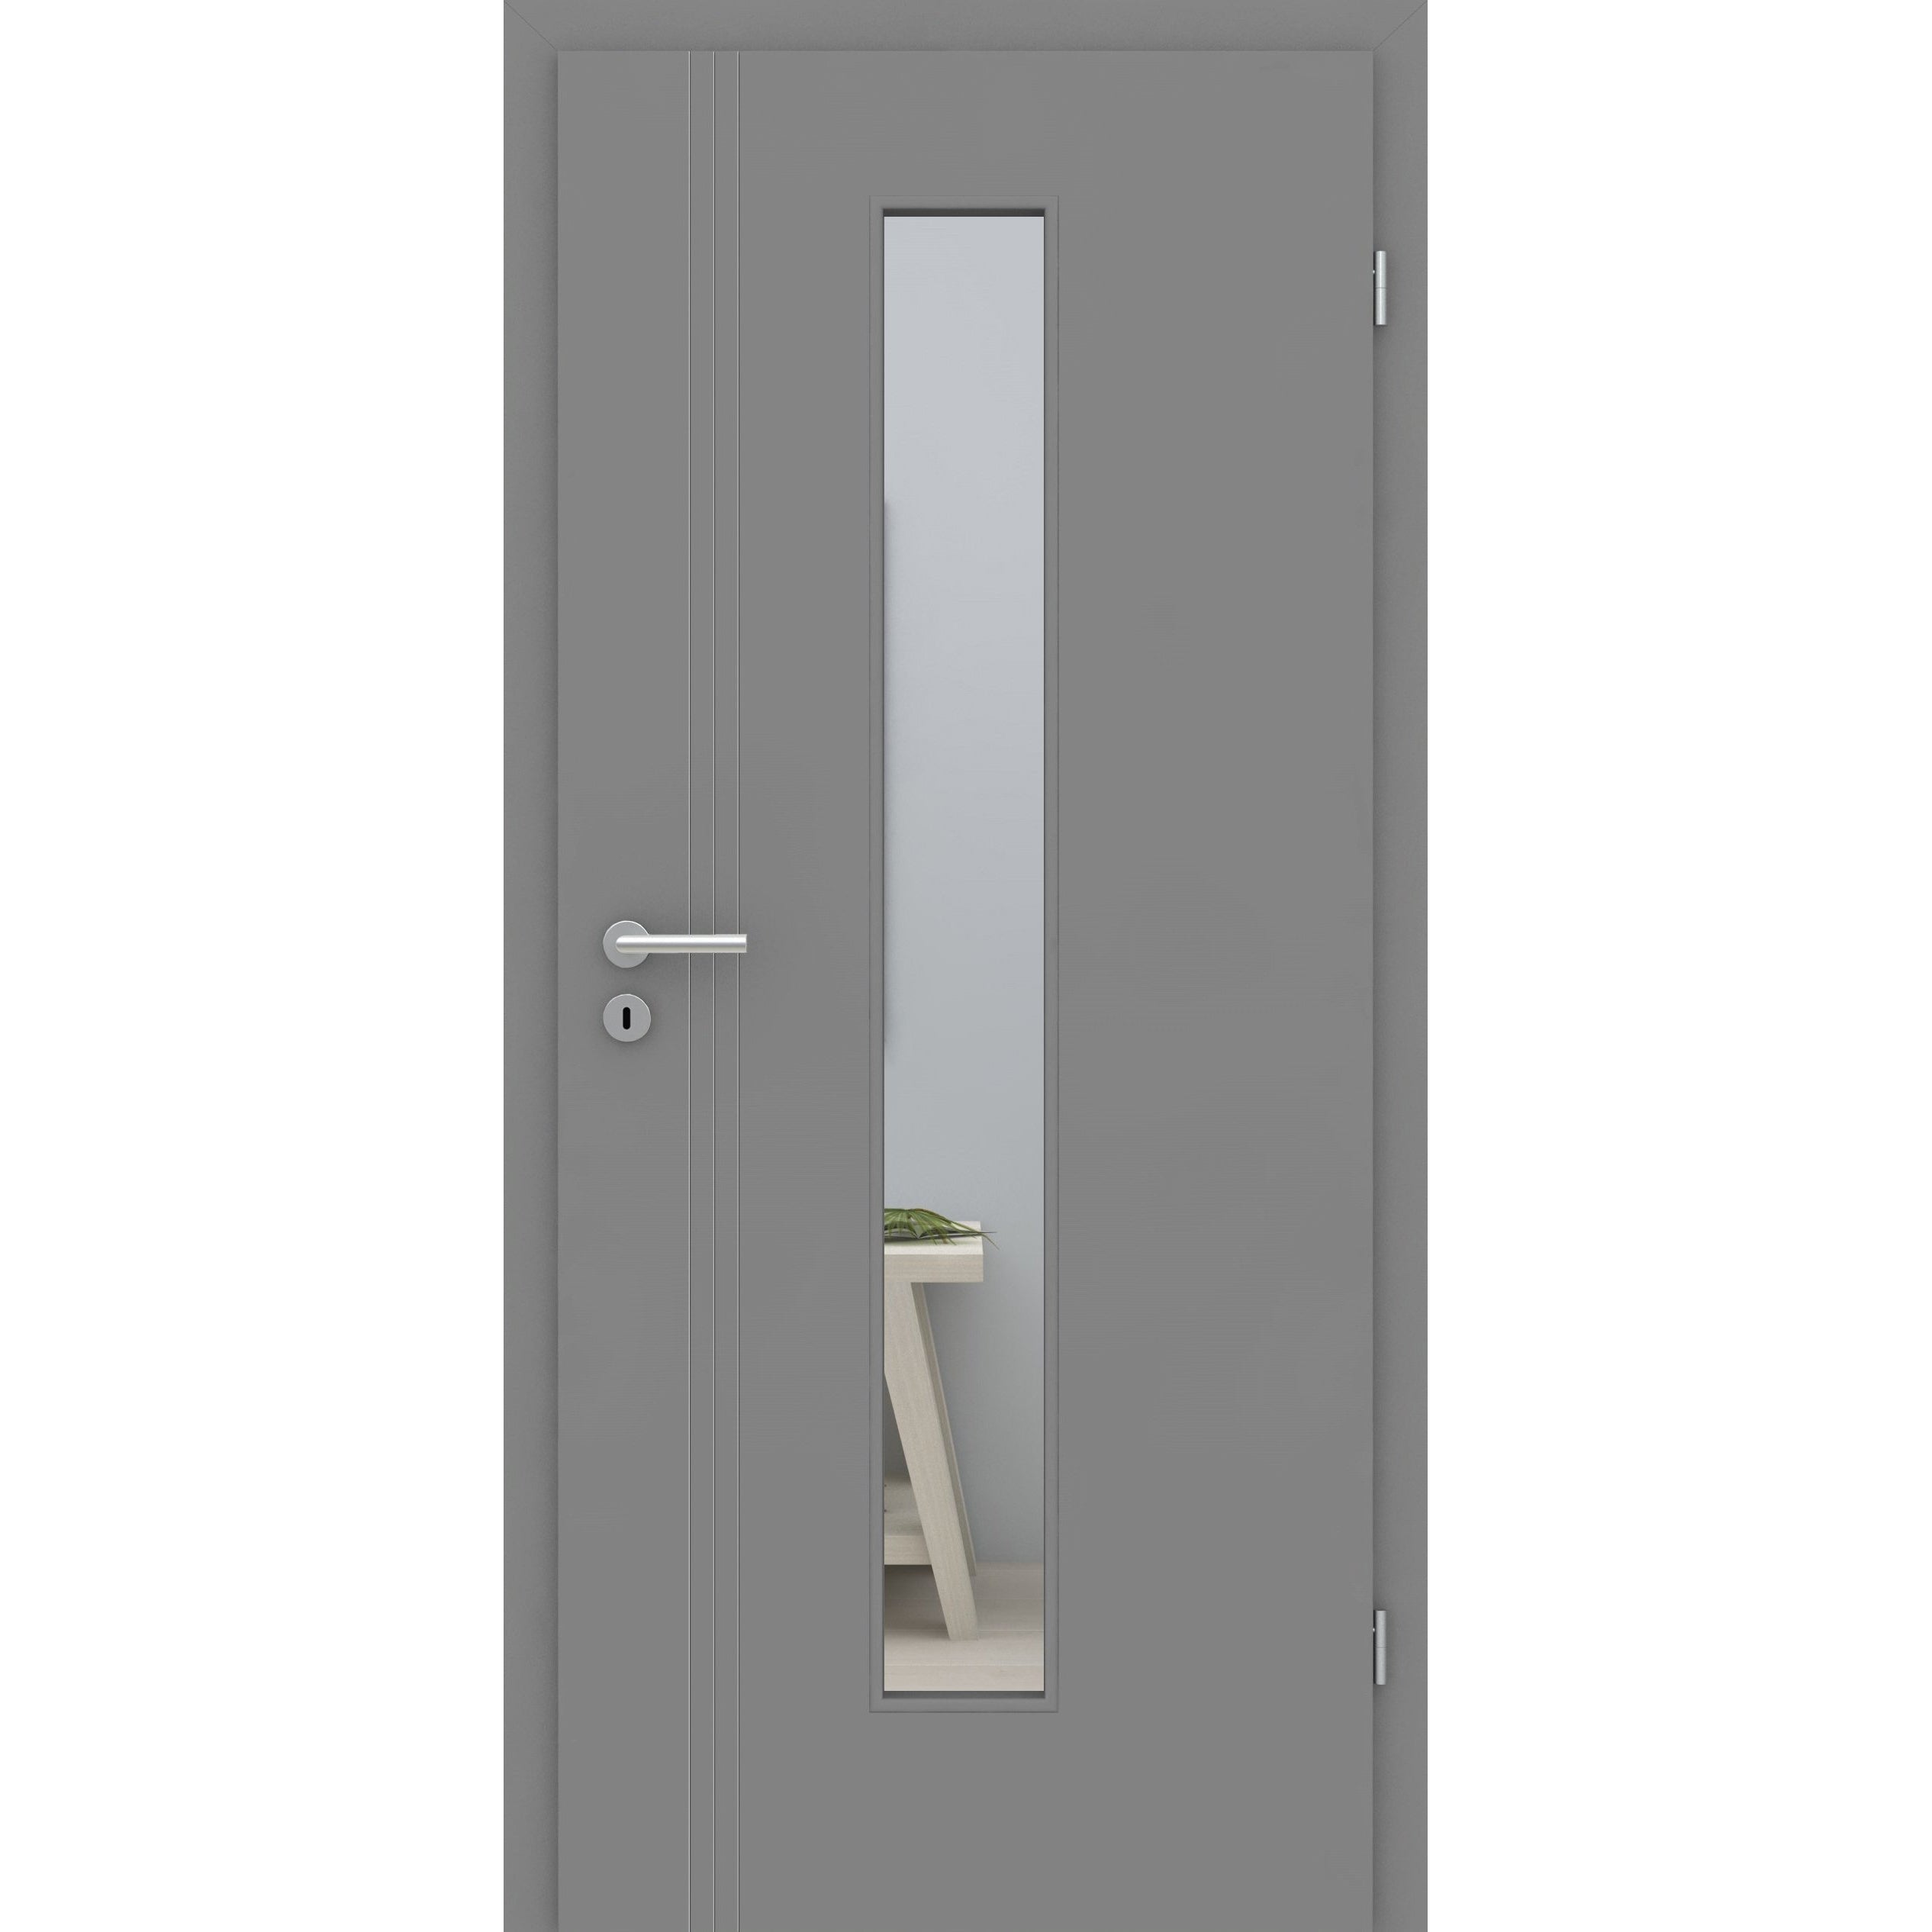 Zimmertür mit Zarge und Lichtausschnitt grau 3 Rillen aufrecht Schlosseite Designkante - Modell Designtür VS37LAM